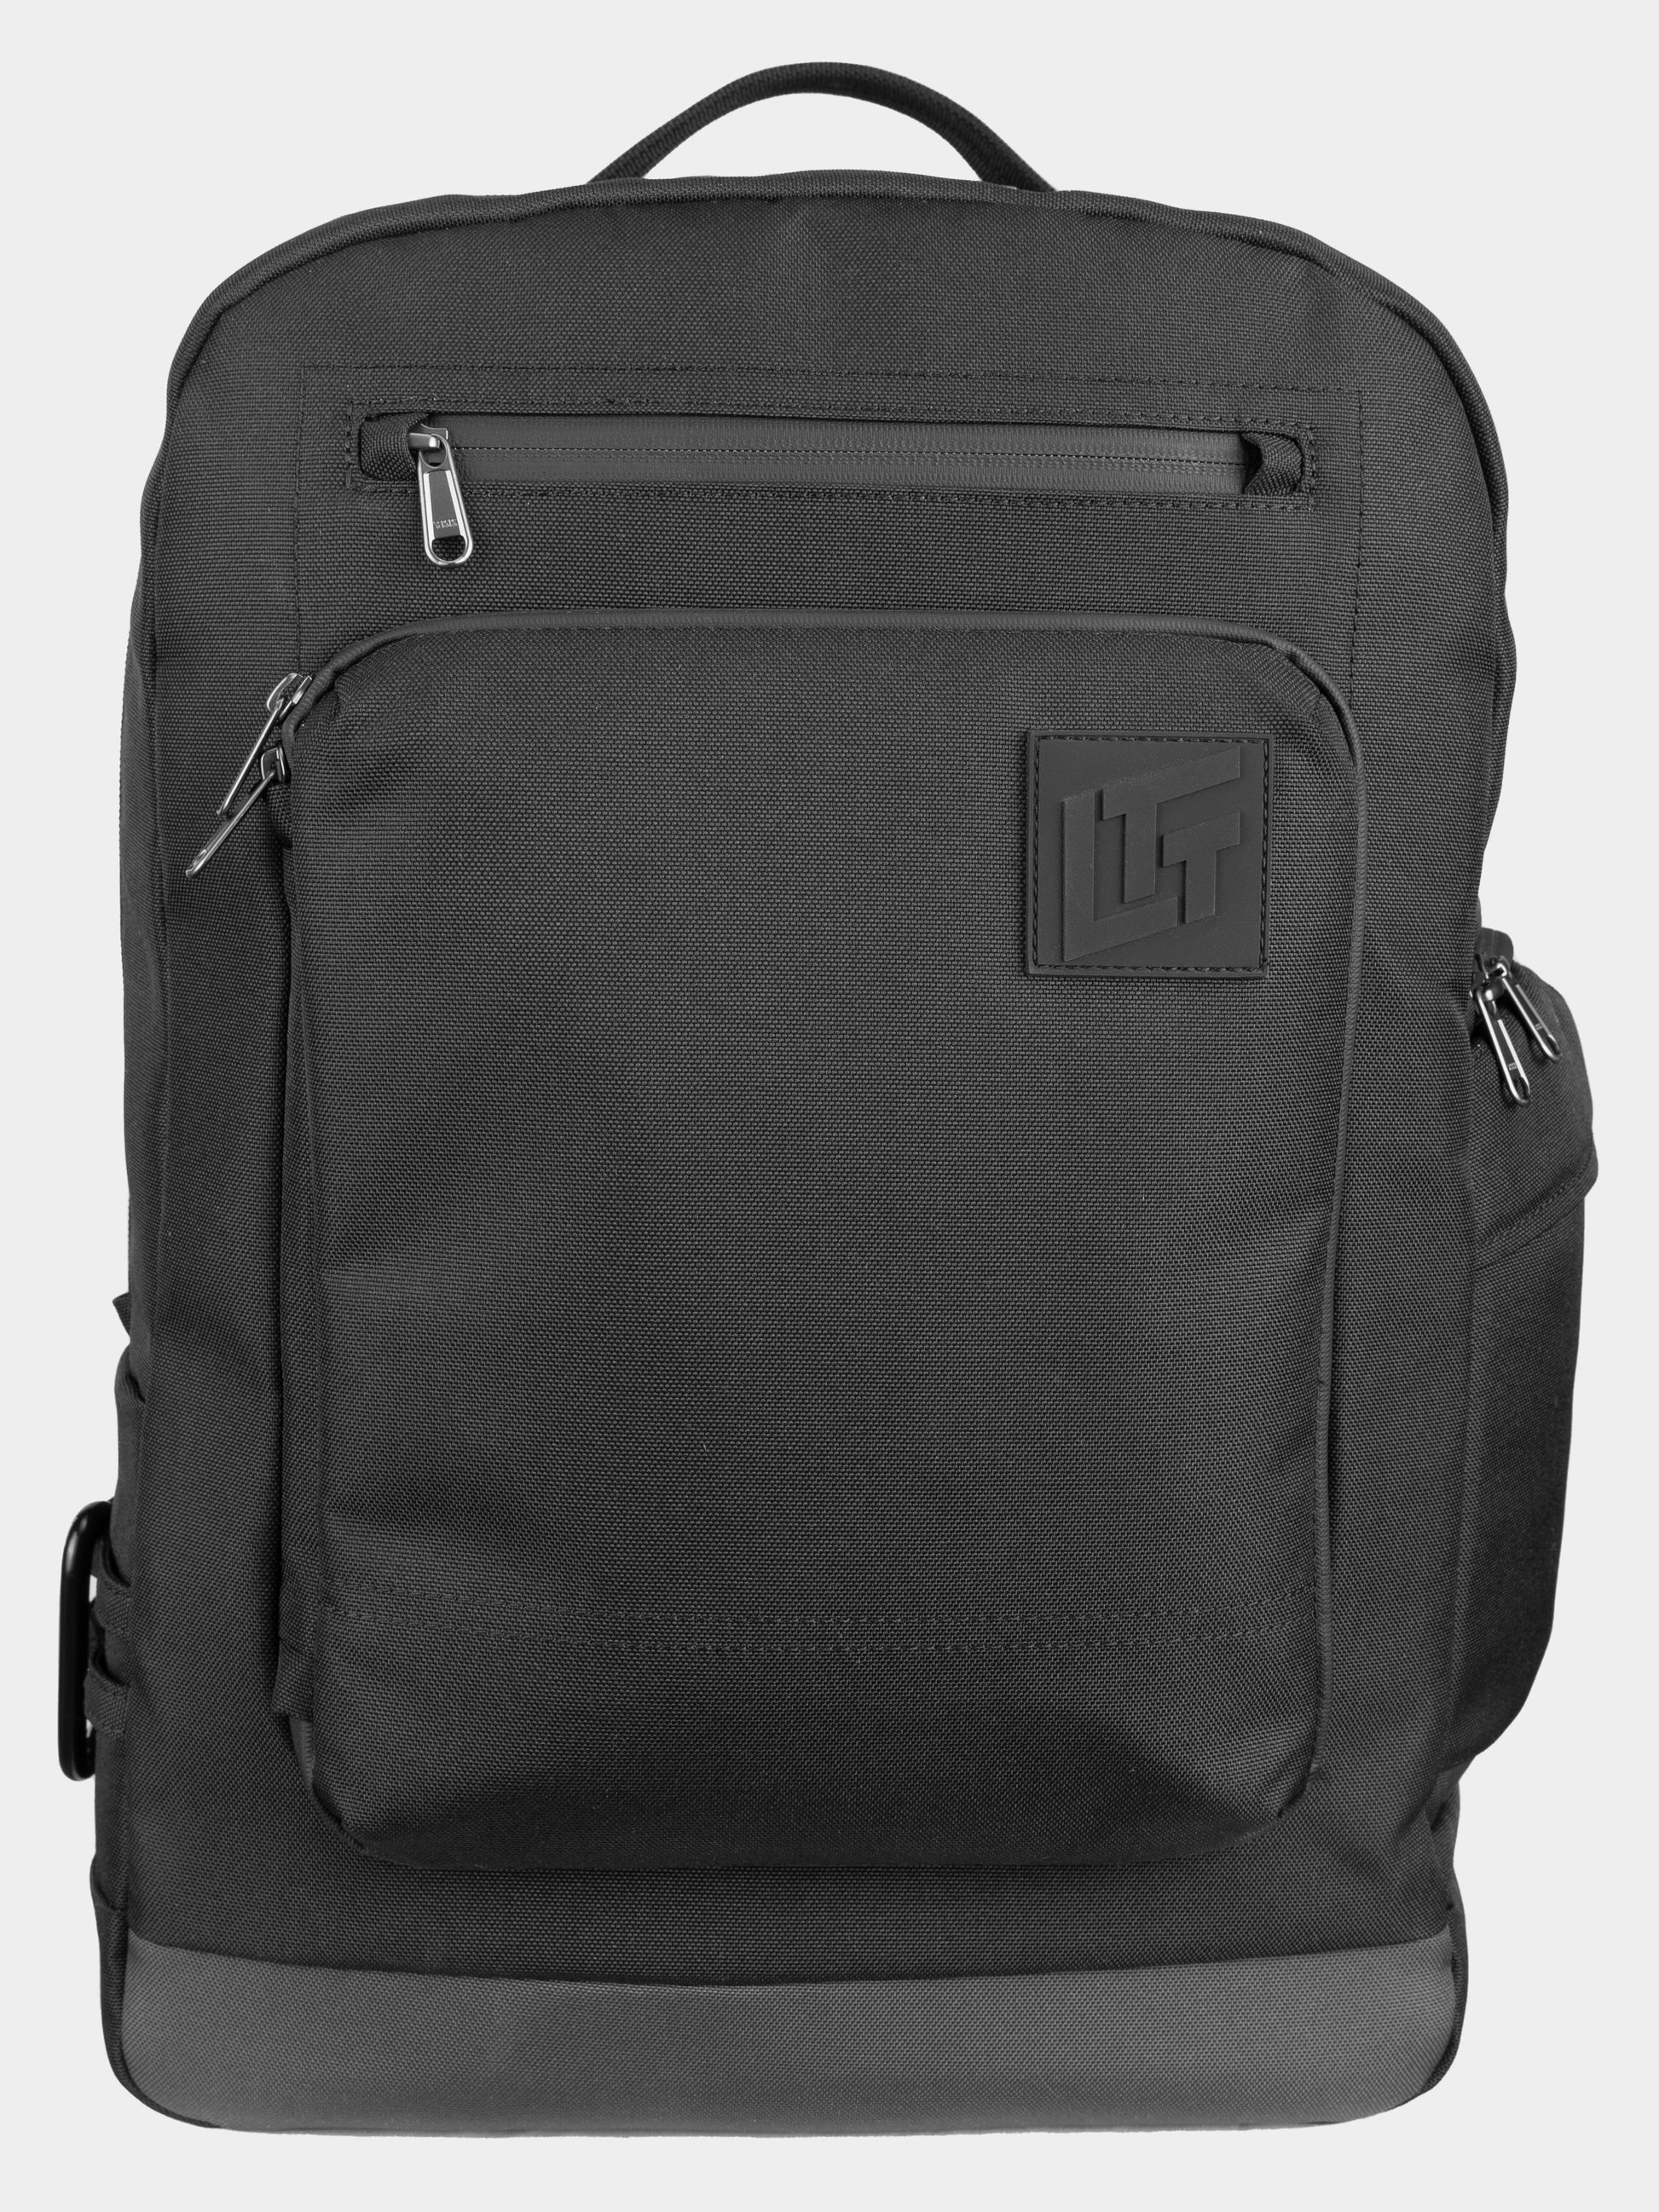 Navy Blue Messenger Bag Unisex College Bag Crossbody Long Adjustable Strap  Handmade Big Pocket Large Bag Zippered Close Durable Bag Washable Different